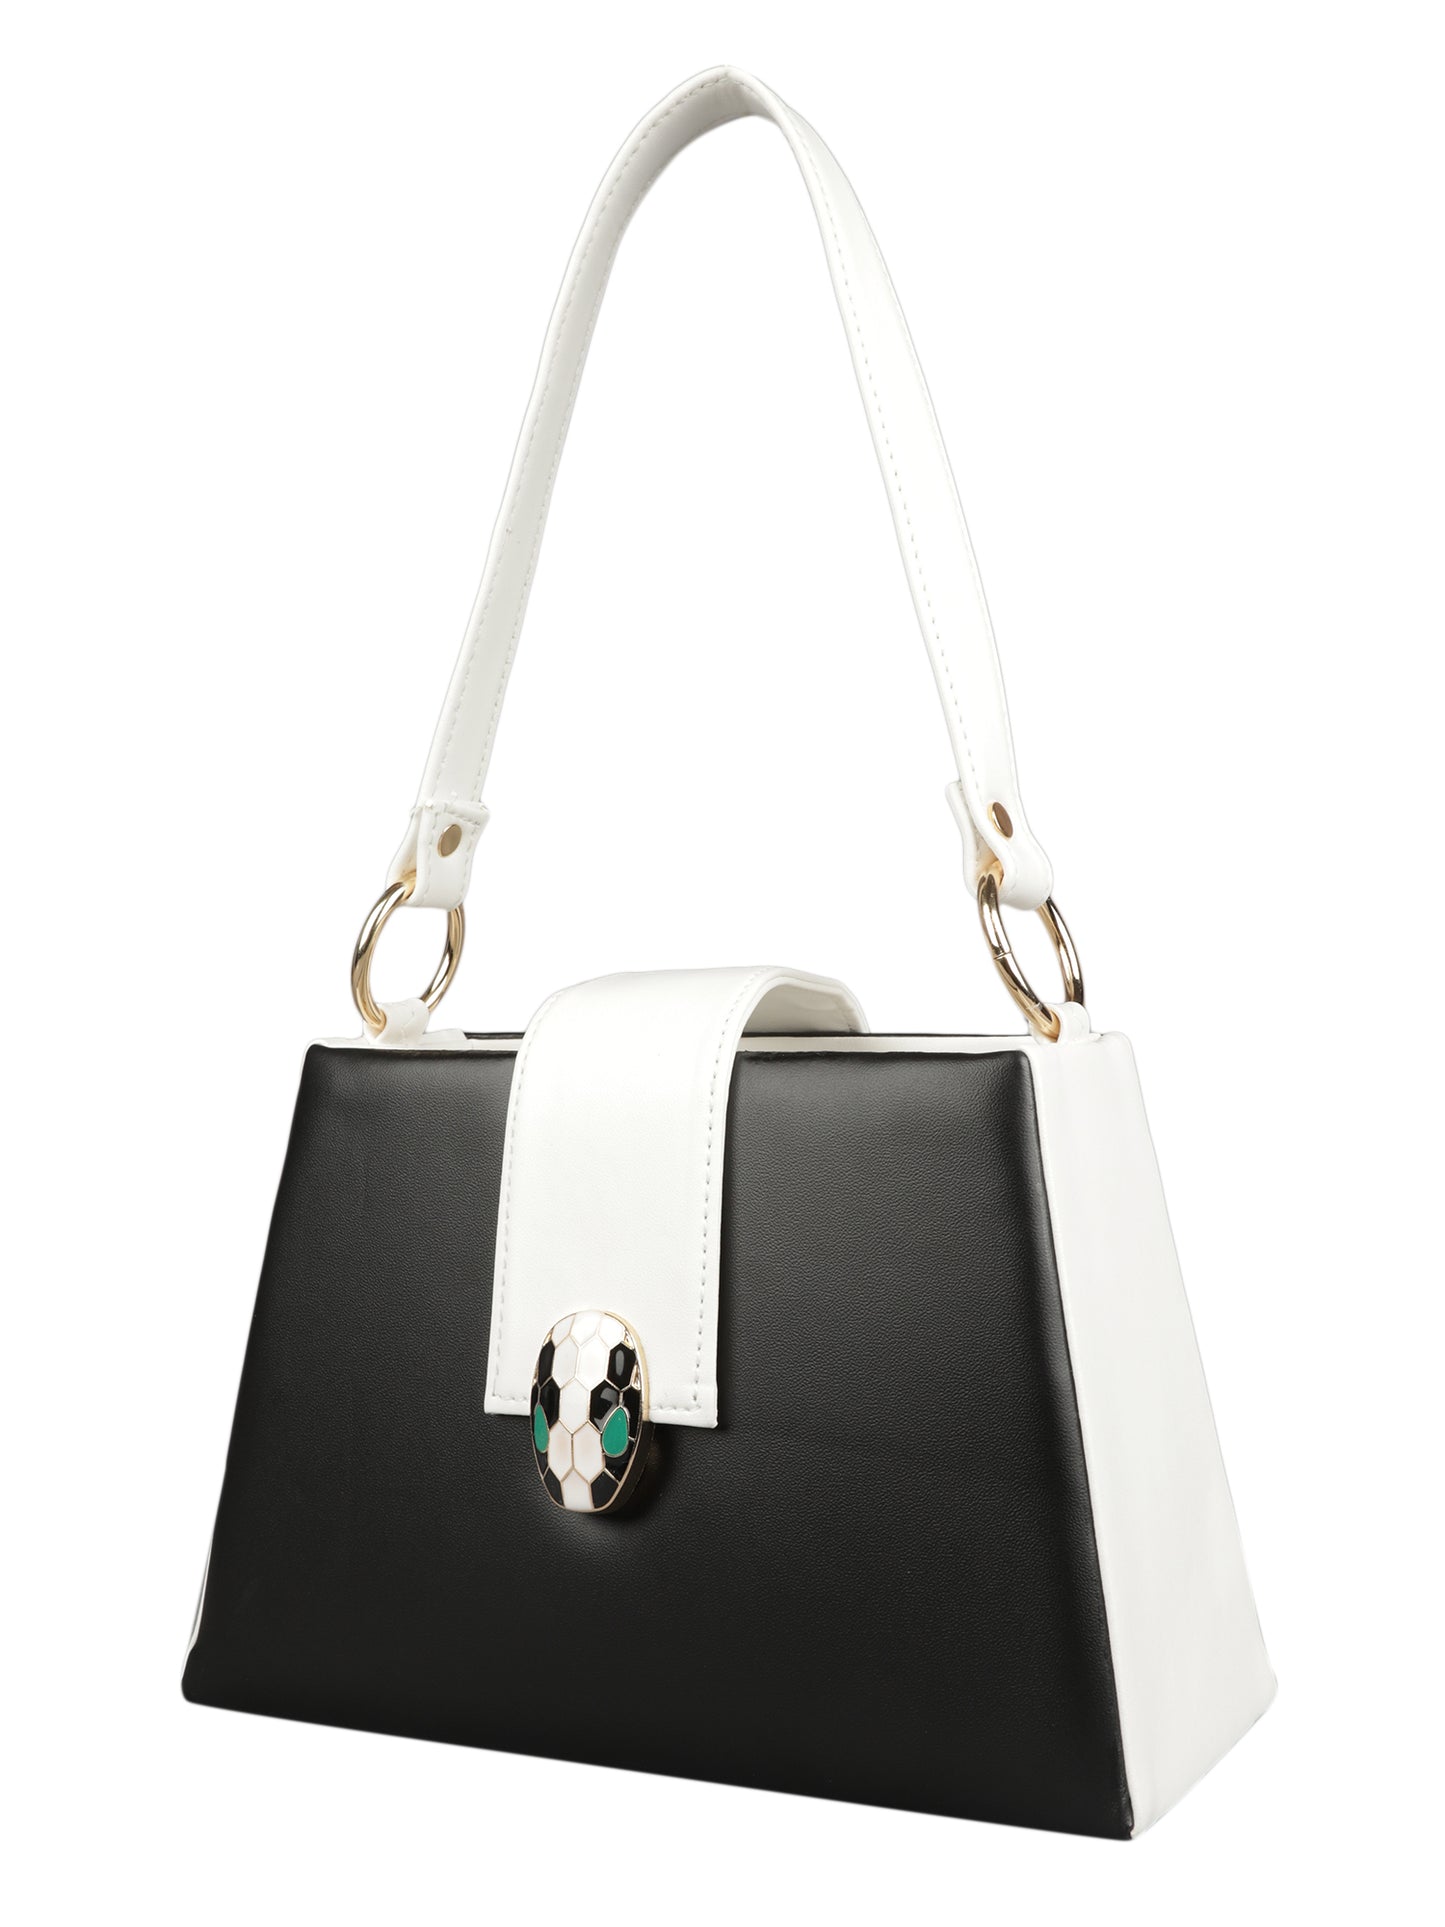 MINI WESST Women's Black Handbags(MWHB005BL)